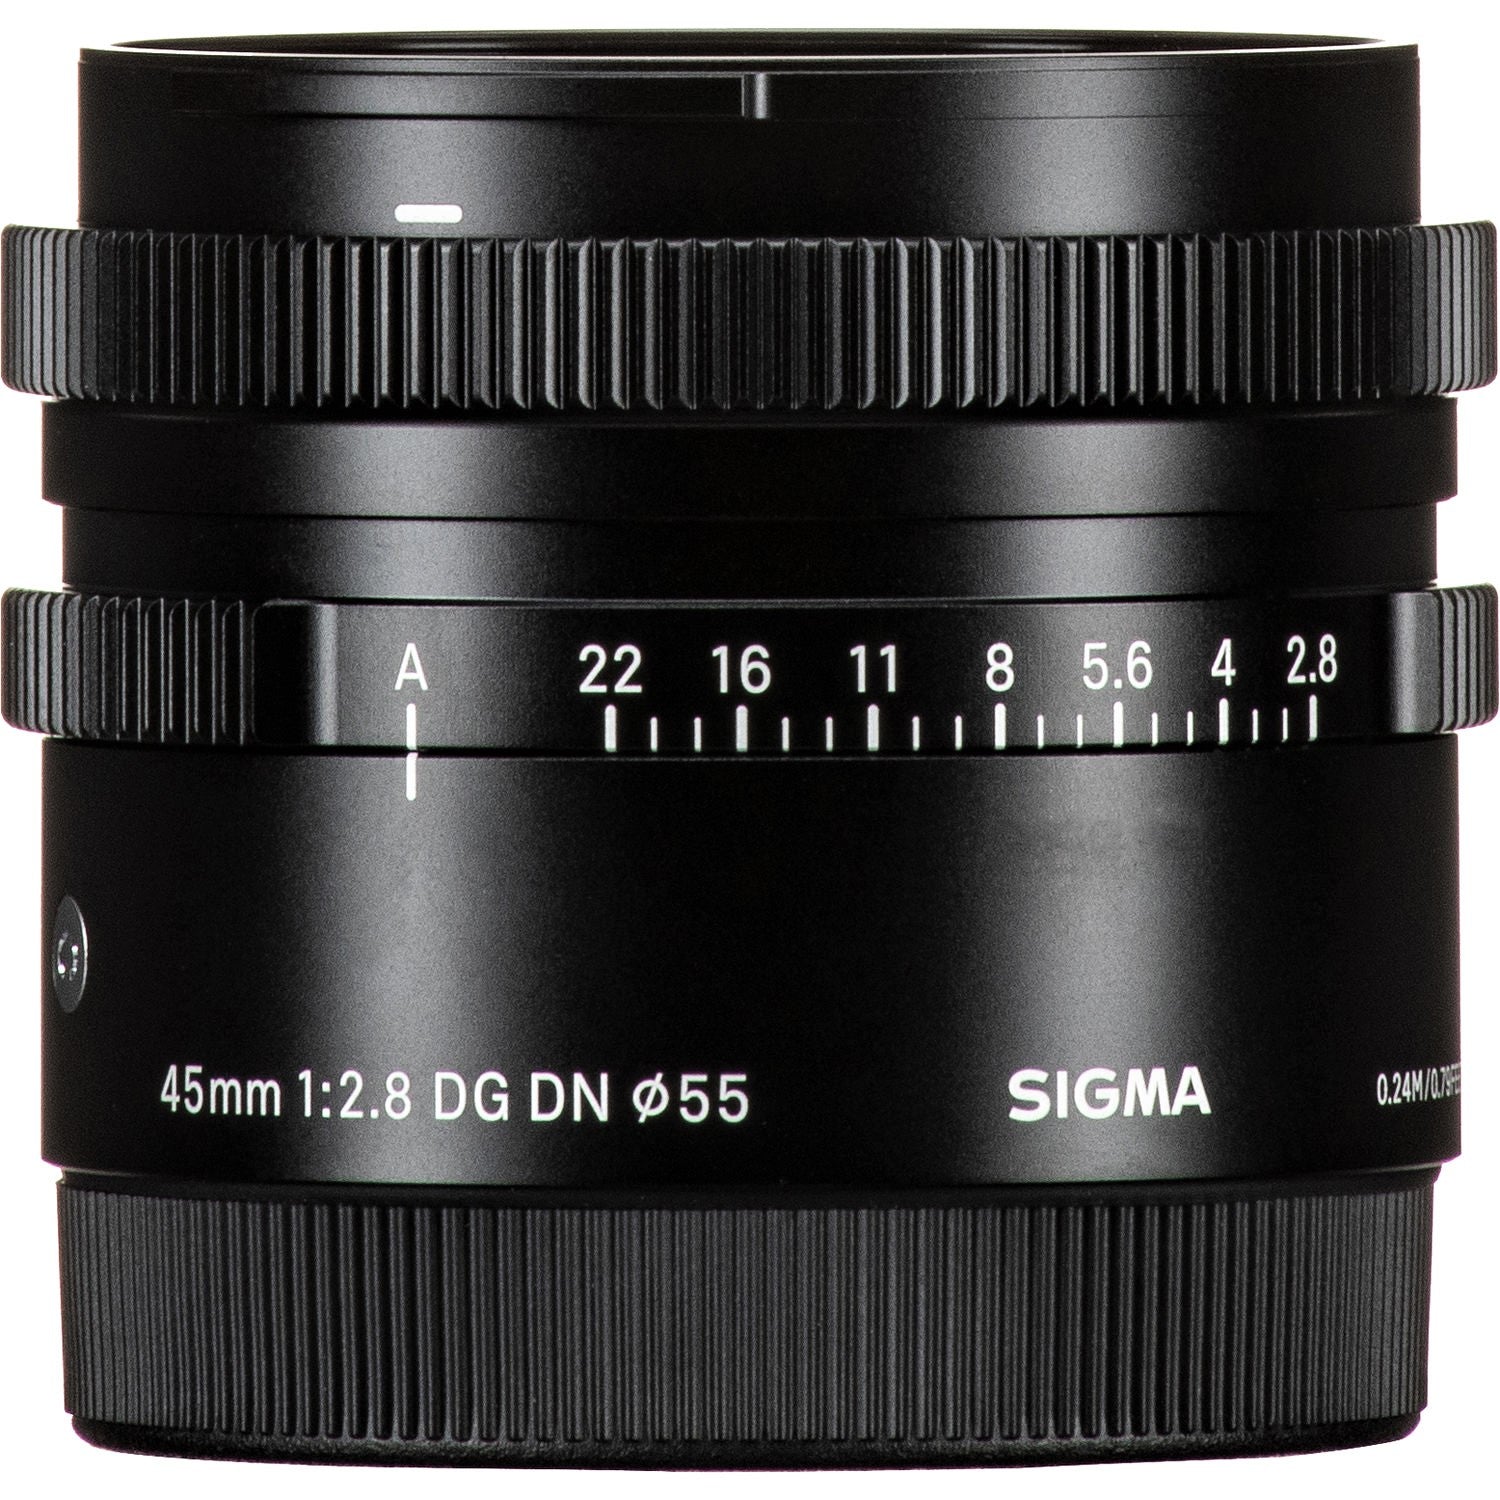 Sigma 45mm F2.8 DG DN Contemporary Lens for Sony E